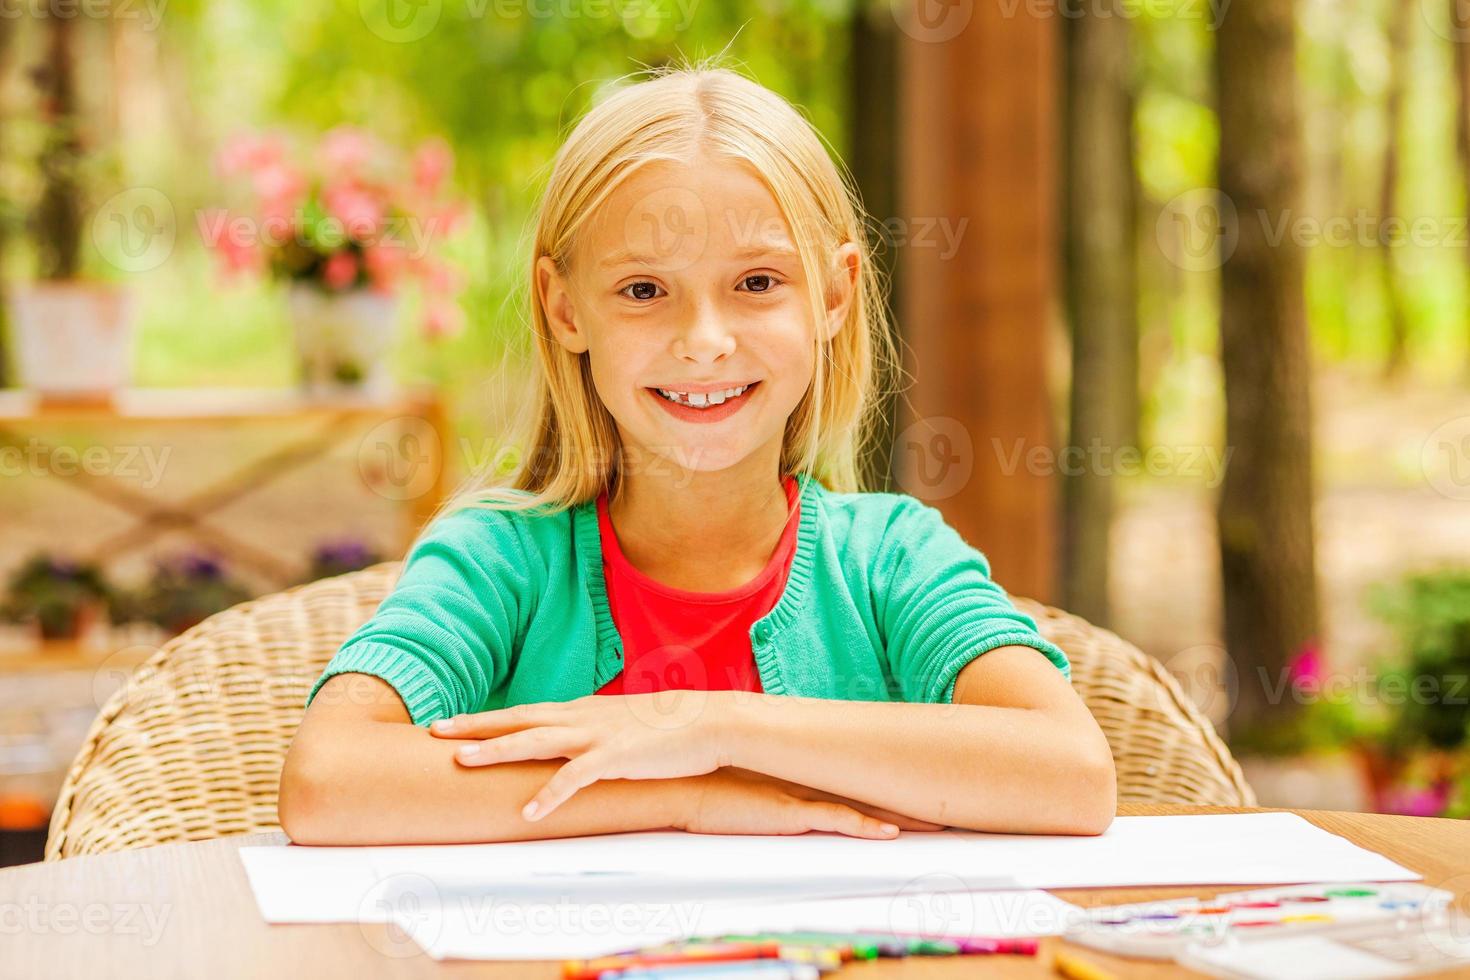 pequeño brillo del sol. linda niña mirando a la cámara y sonriendo mientras se sienta en la mesa con lápices de colores y papel sobre ella foto